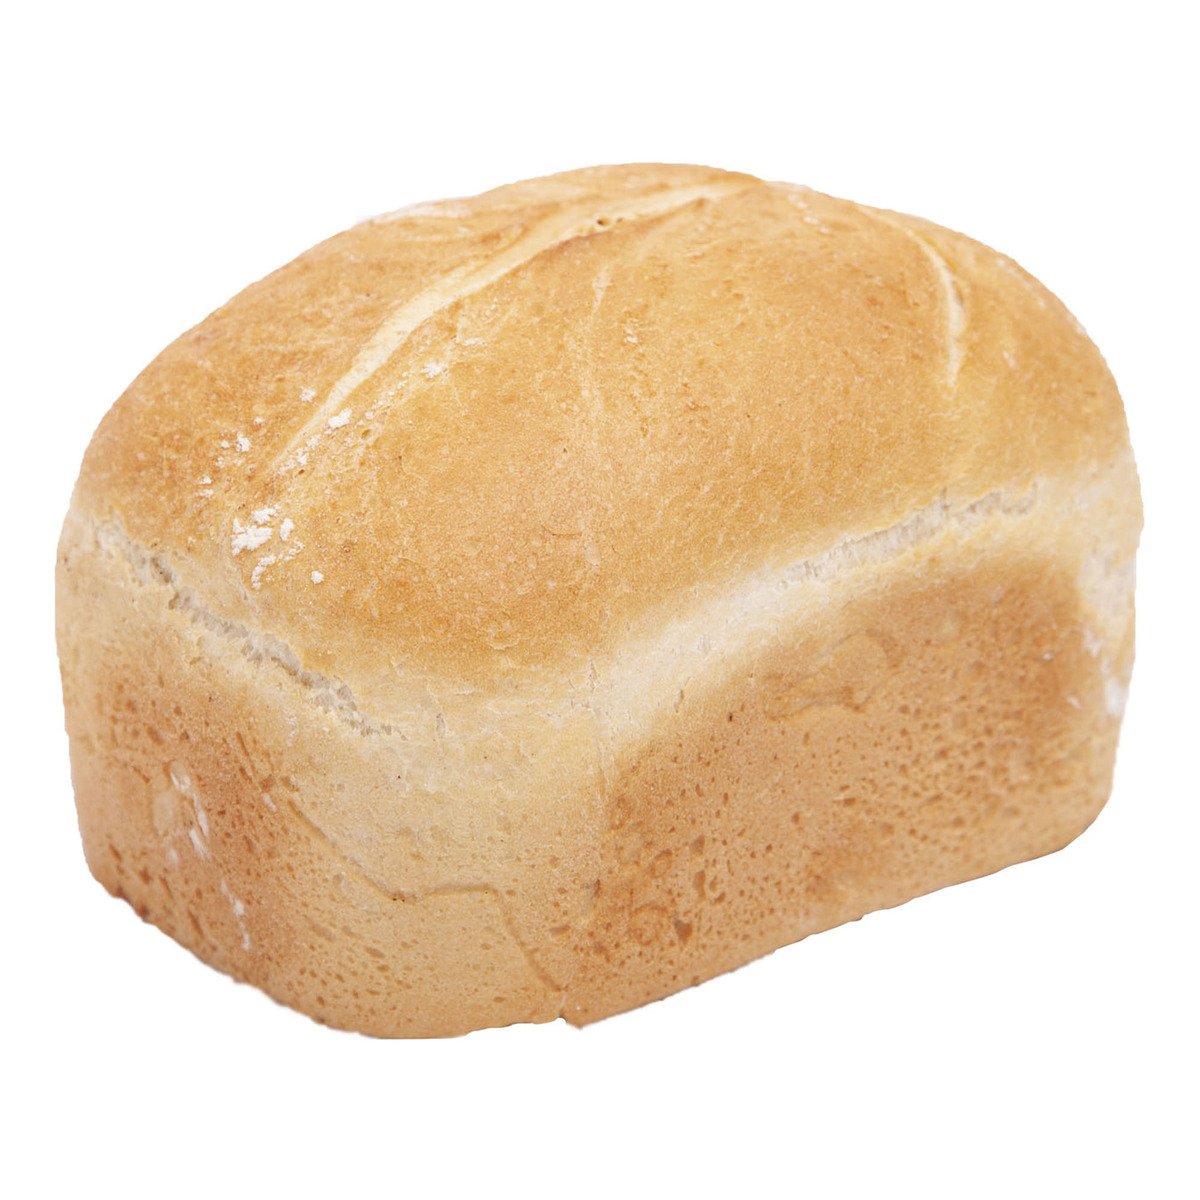 خبز ابيض عضوي قطعة واحدة